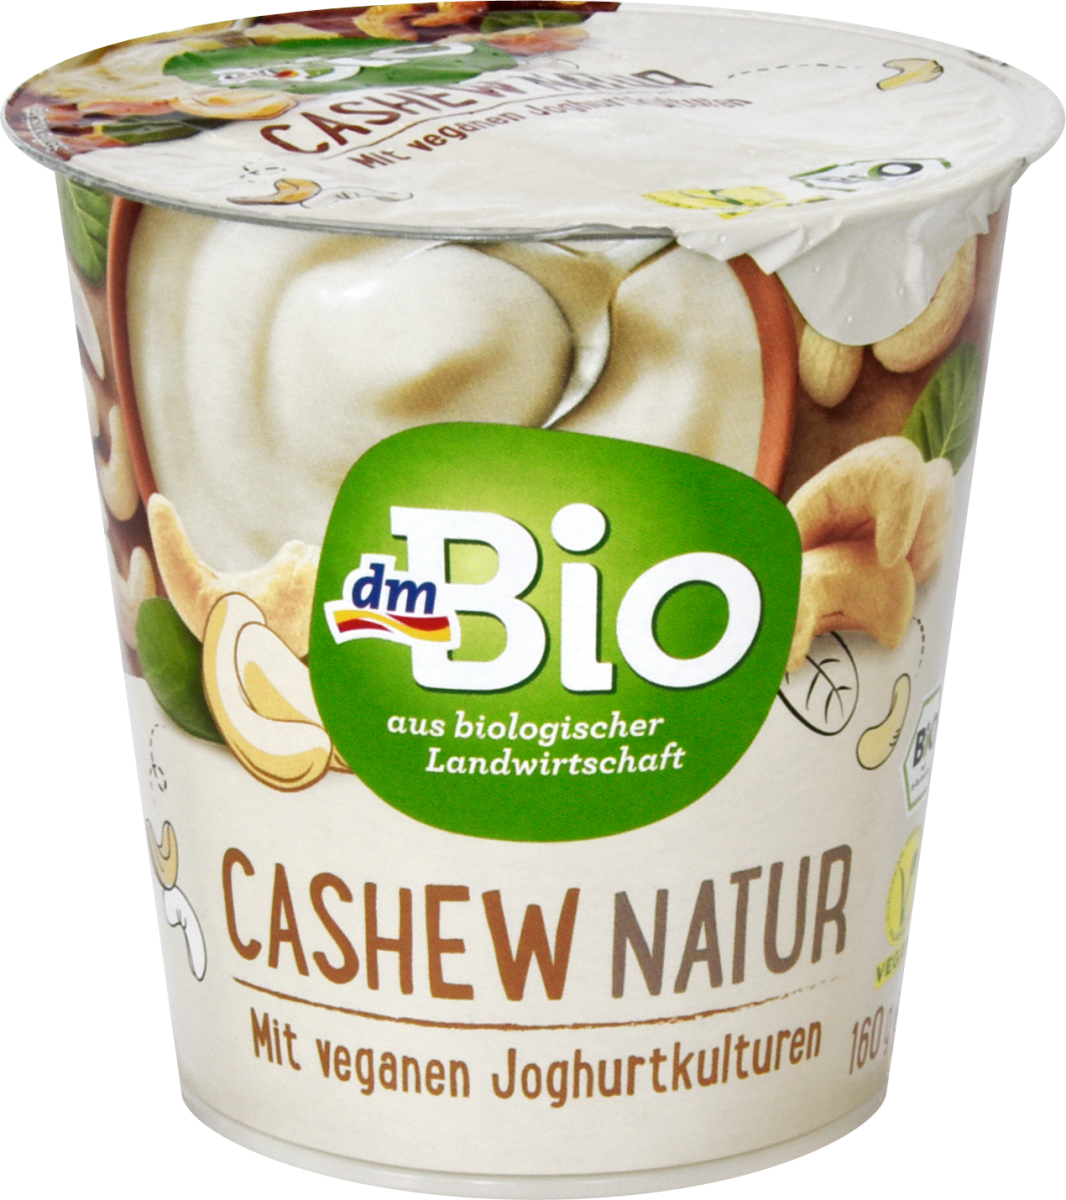 Dmbio Cashew Natur Mit Veganen Joghurtkulturen 160 G Dm At